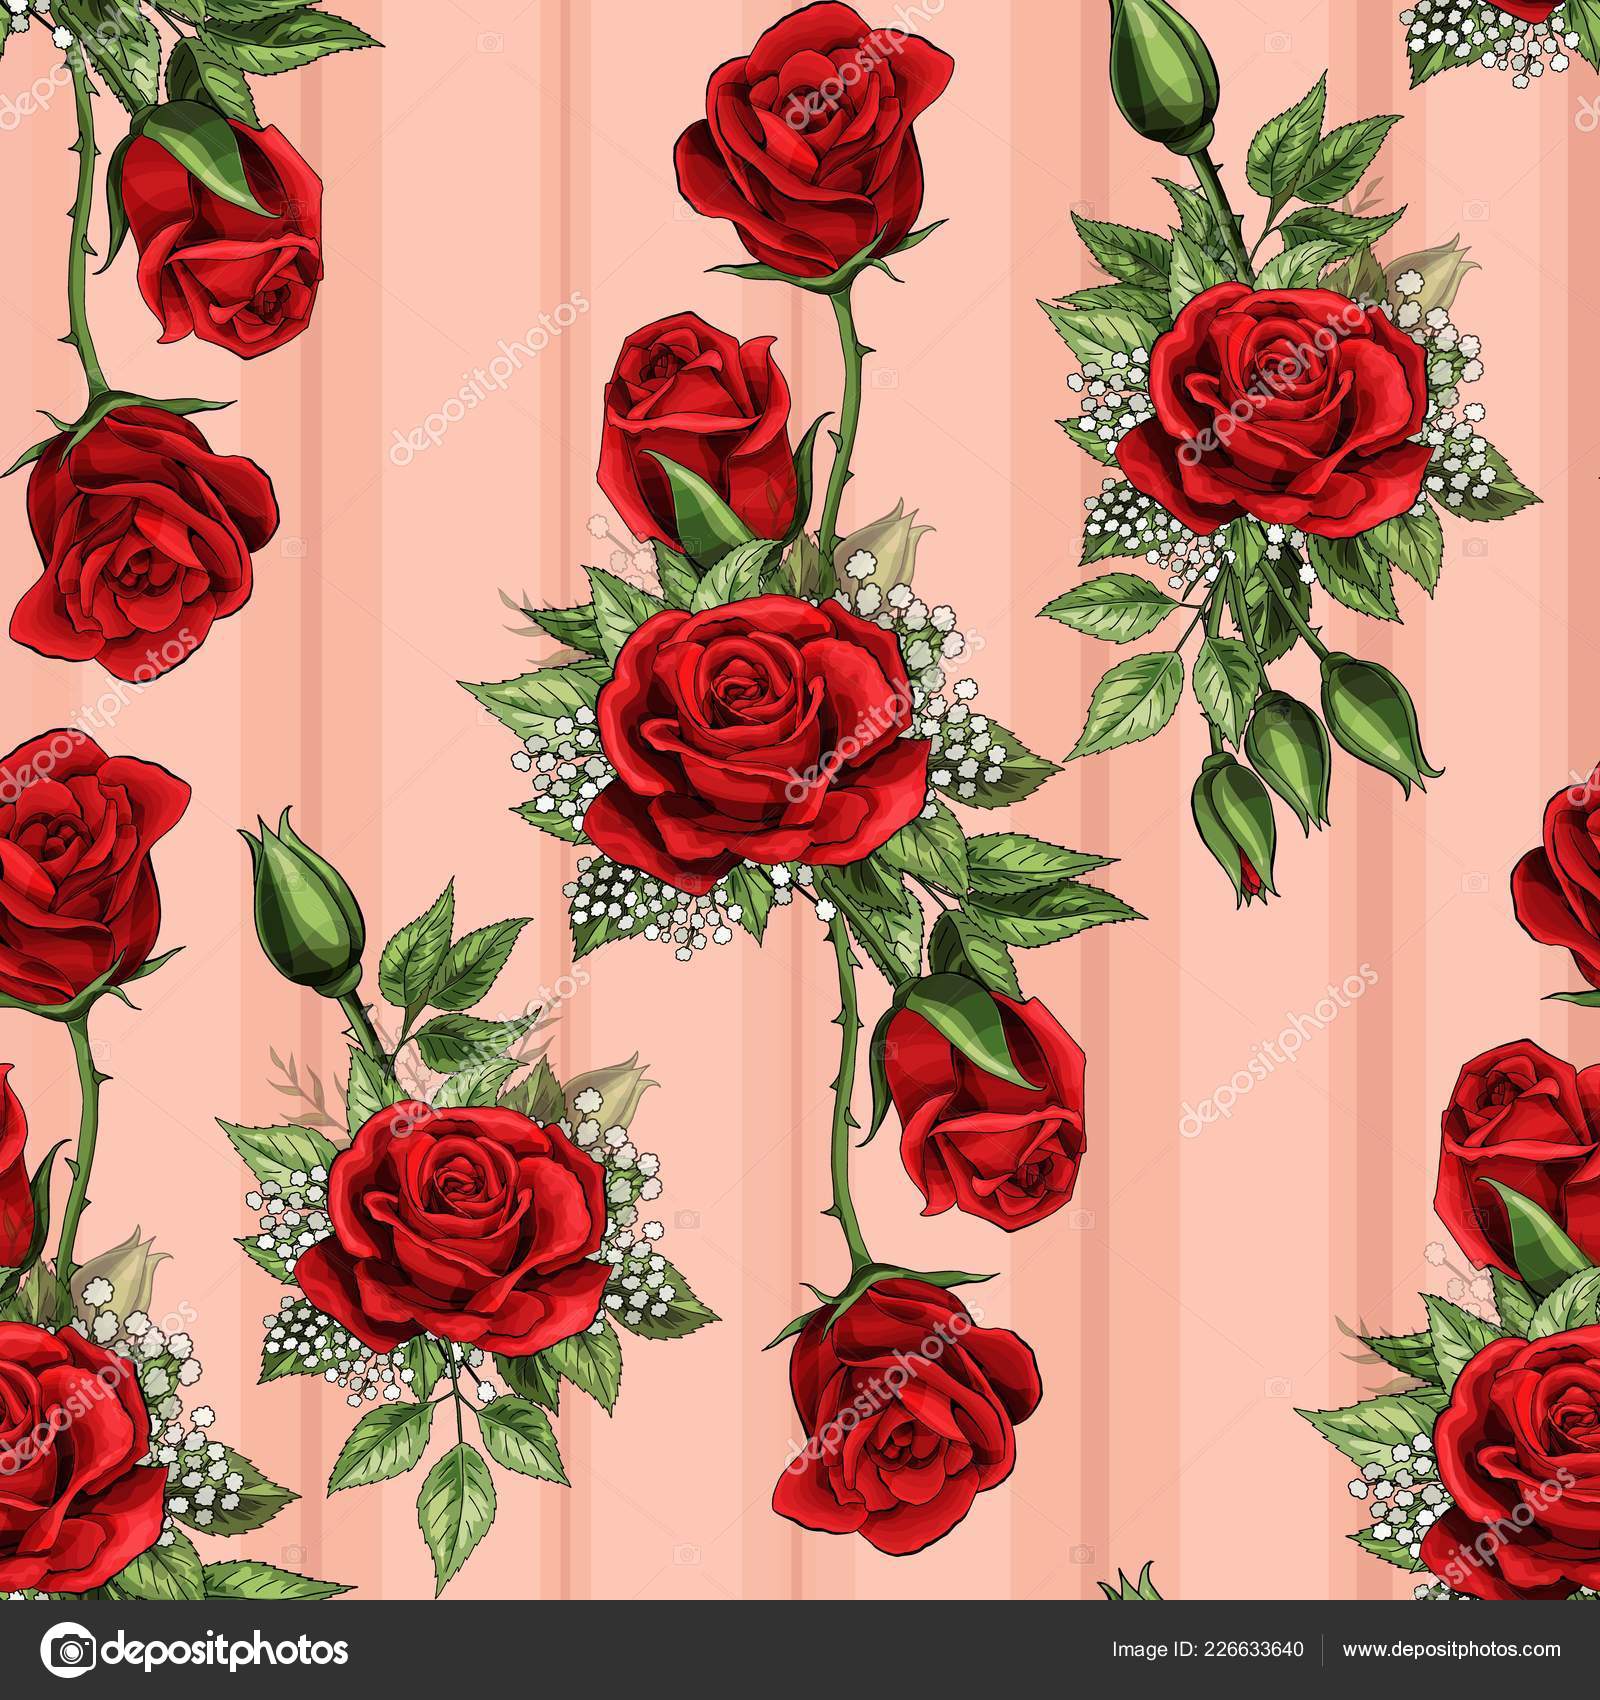 red rose wallpaper,garden roses,red,flower,rose,floribunda